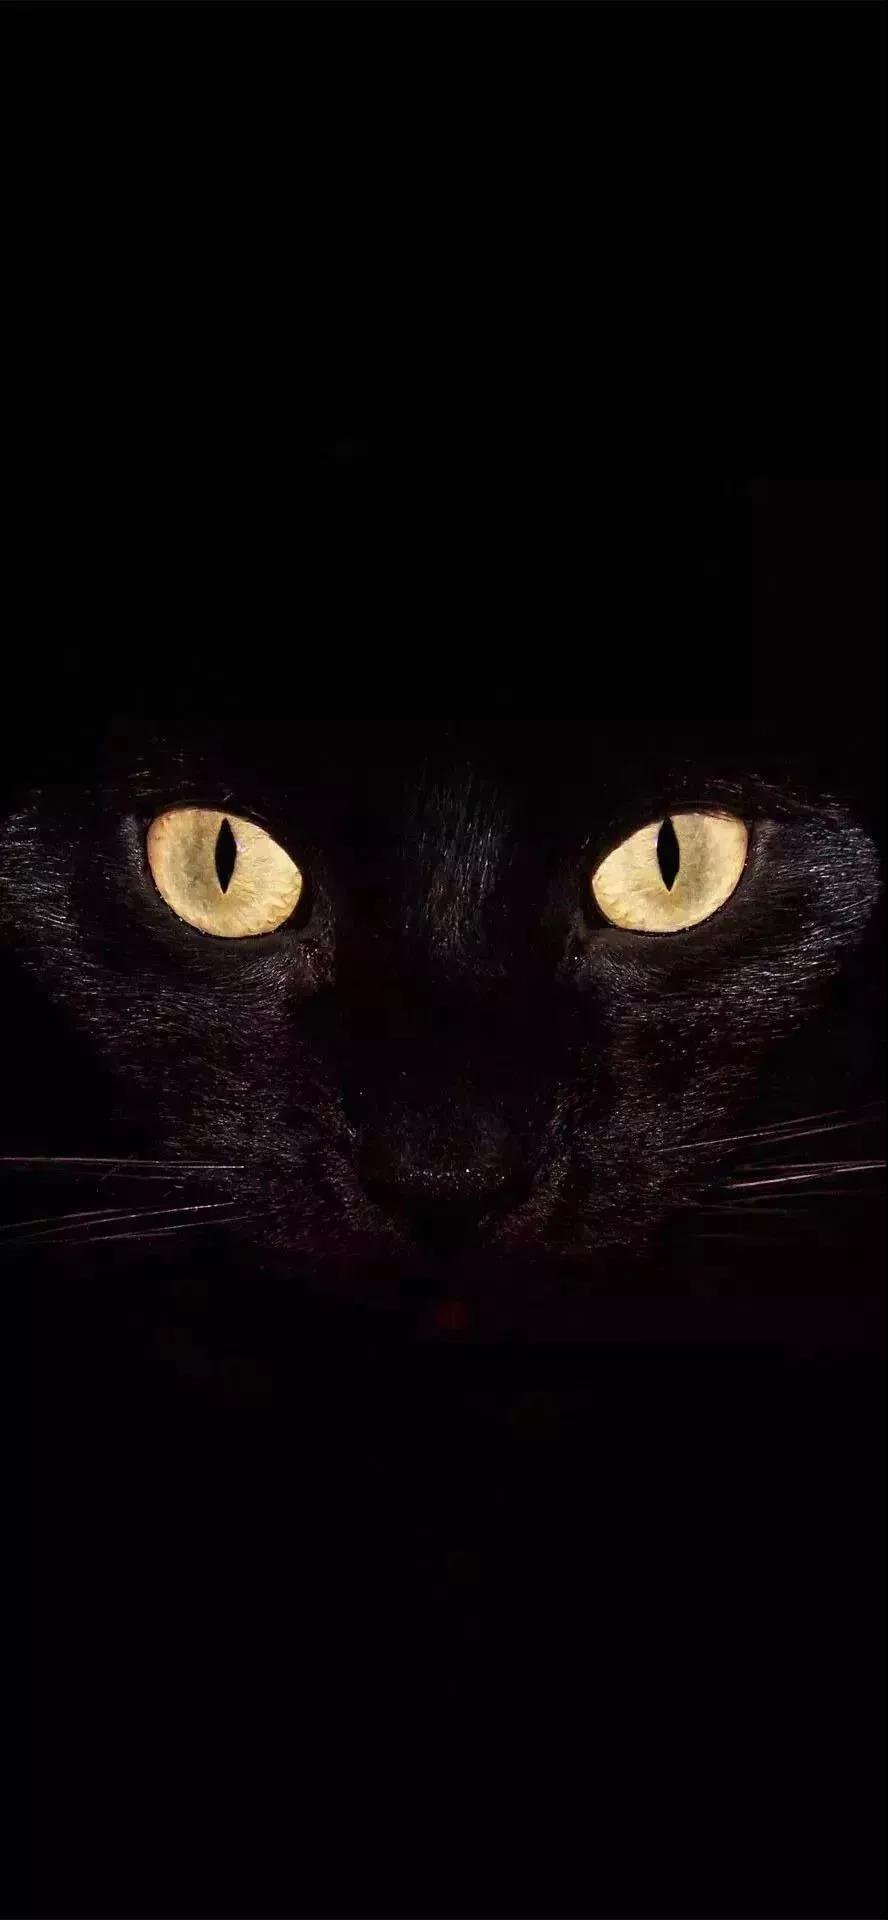 黑猫锁屏图片